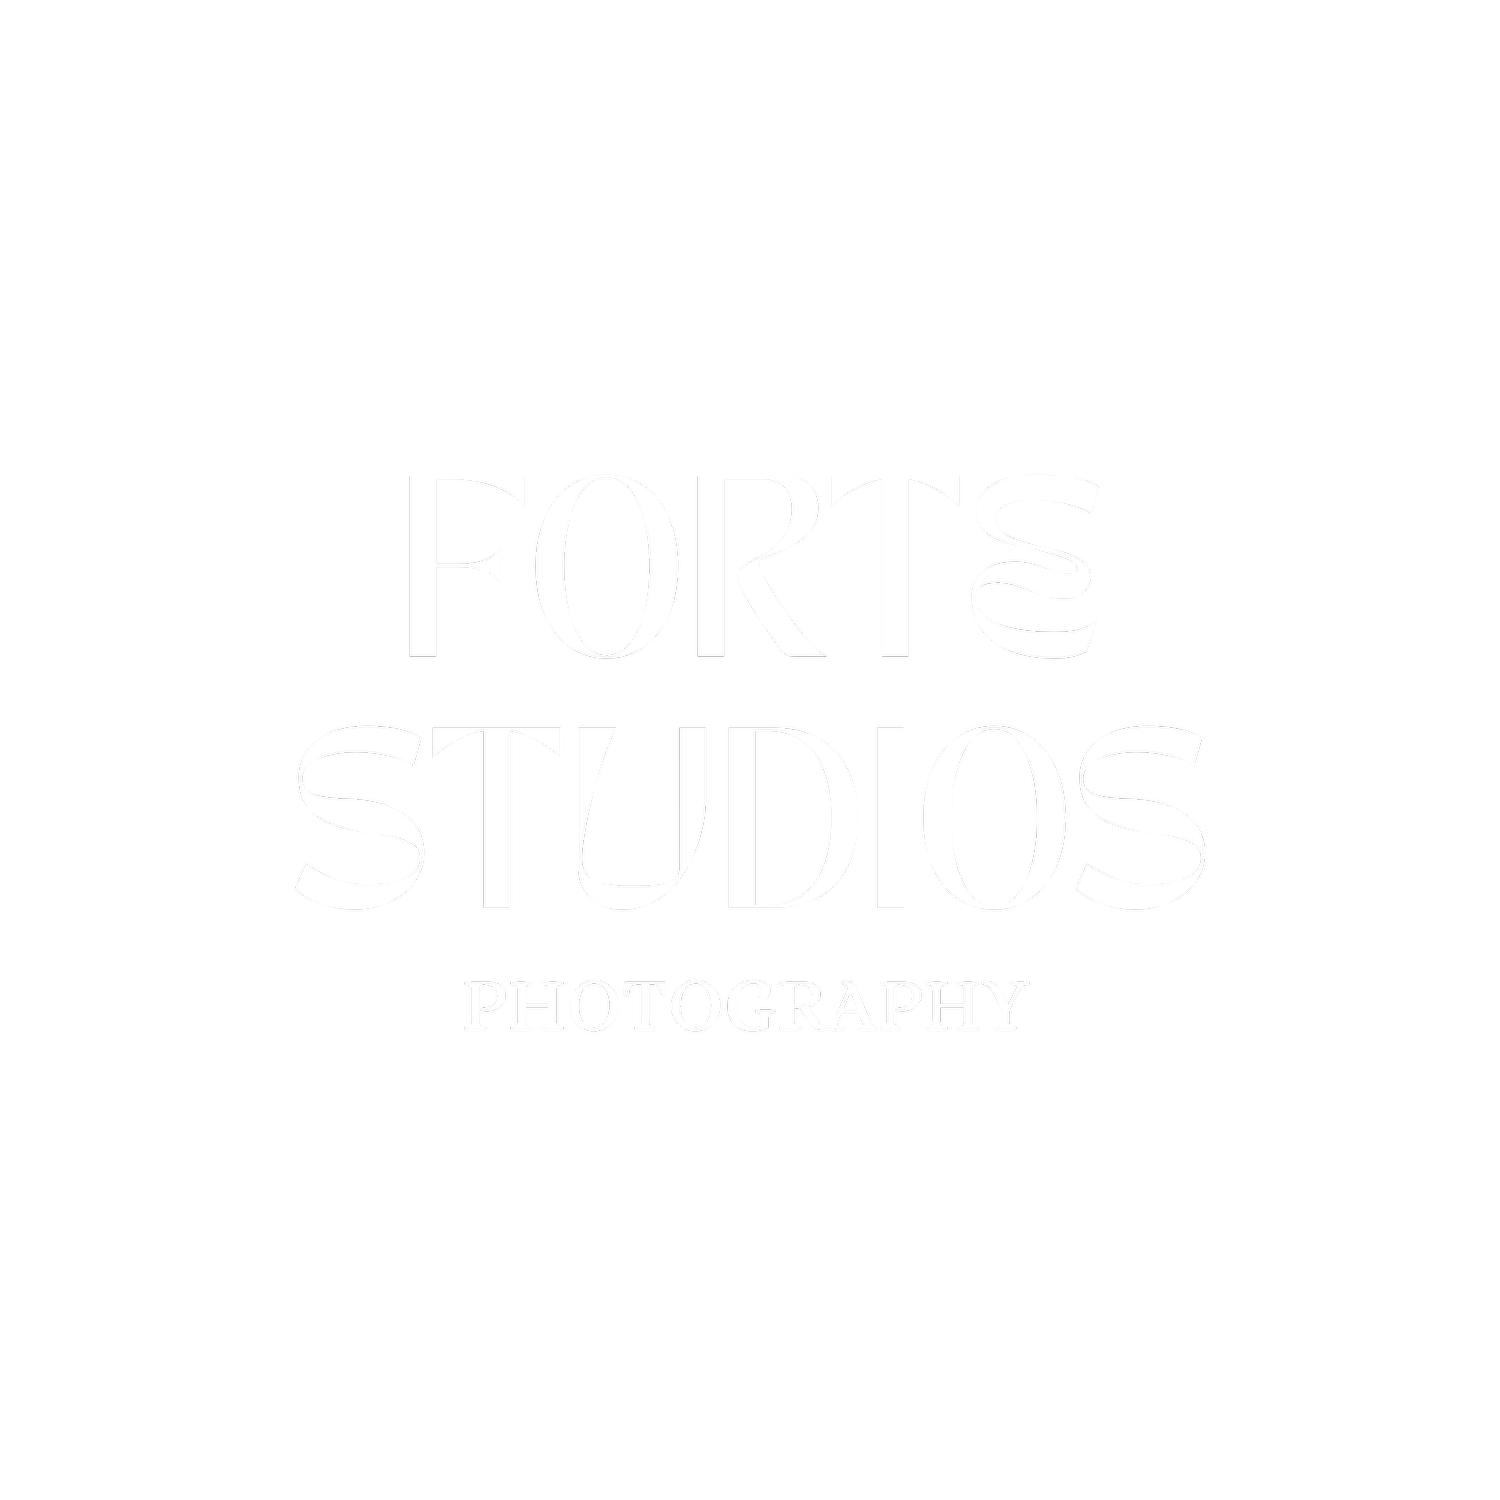 KMH Forte Studios